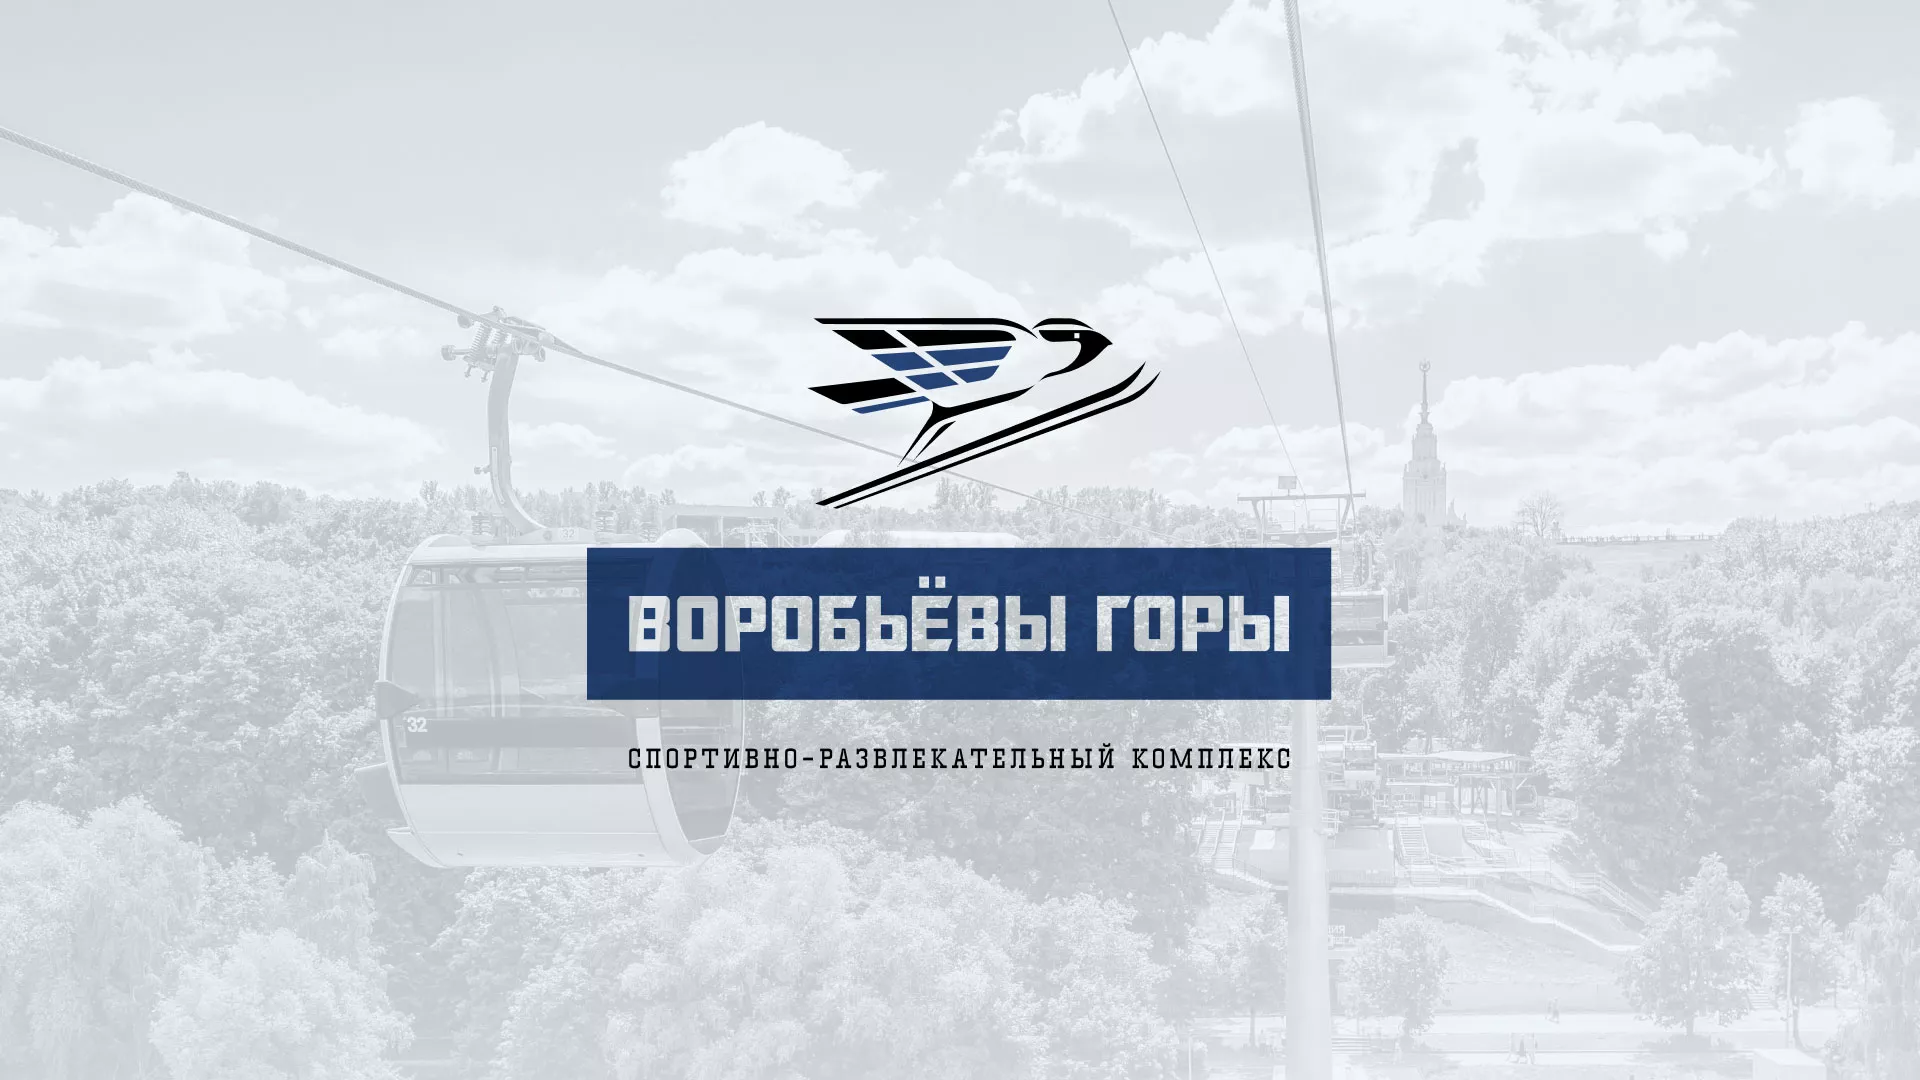 Разработка сайта в Топках для спортивно-развлекательного комплекса «Воробьёвы горы»